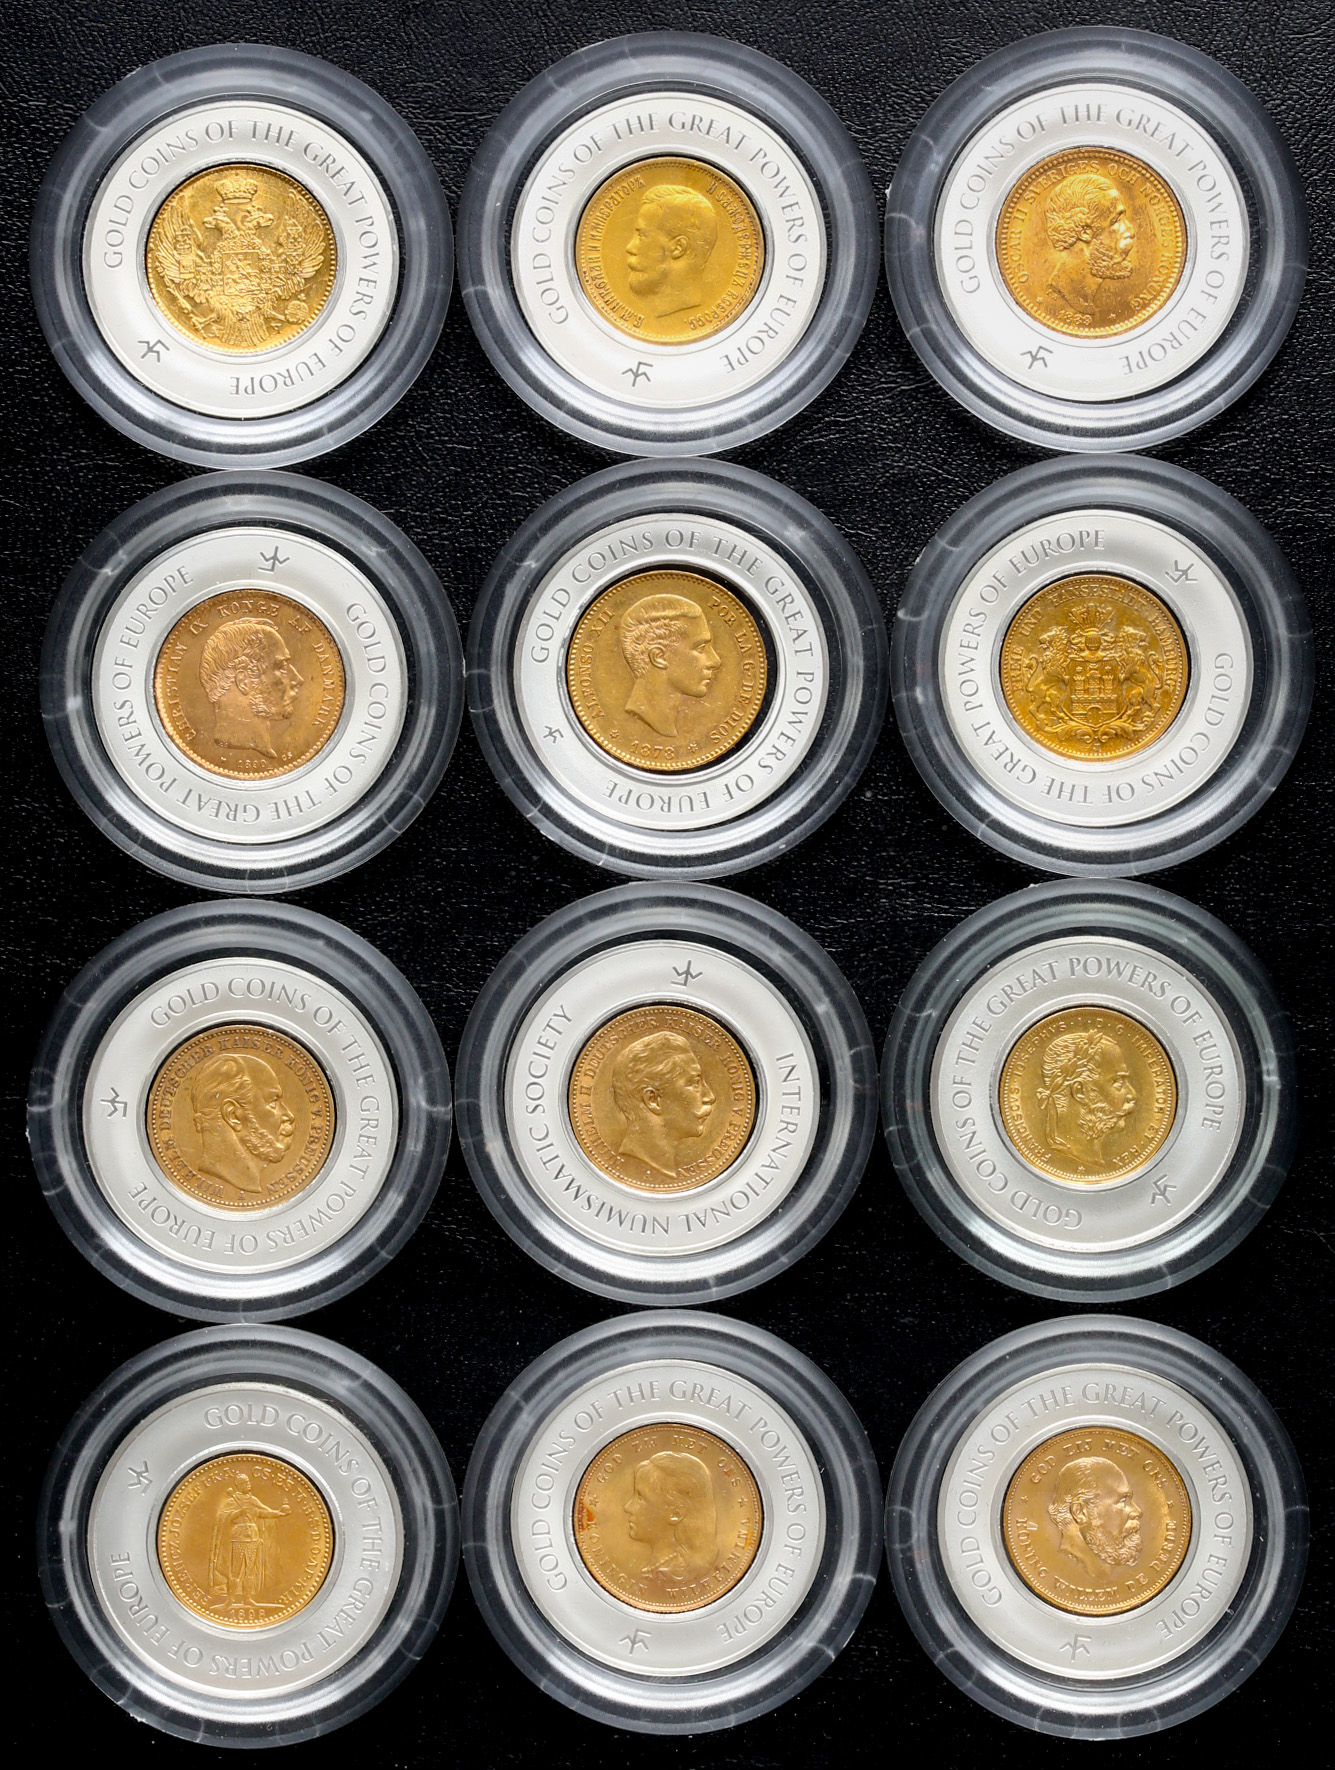 貨幣博物館 | Lot of world coins 世界のコイン “GOLD Coin of The Great Powers of EUROPE“  12ヵ国の代表金貨セット 返品不可 要下見 Sold as is No returns with custom case by Franklin  mint フランクリン・ミント社製ケース